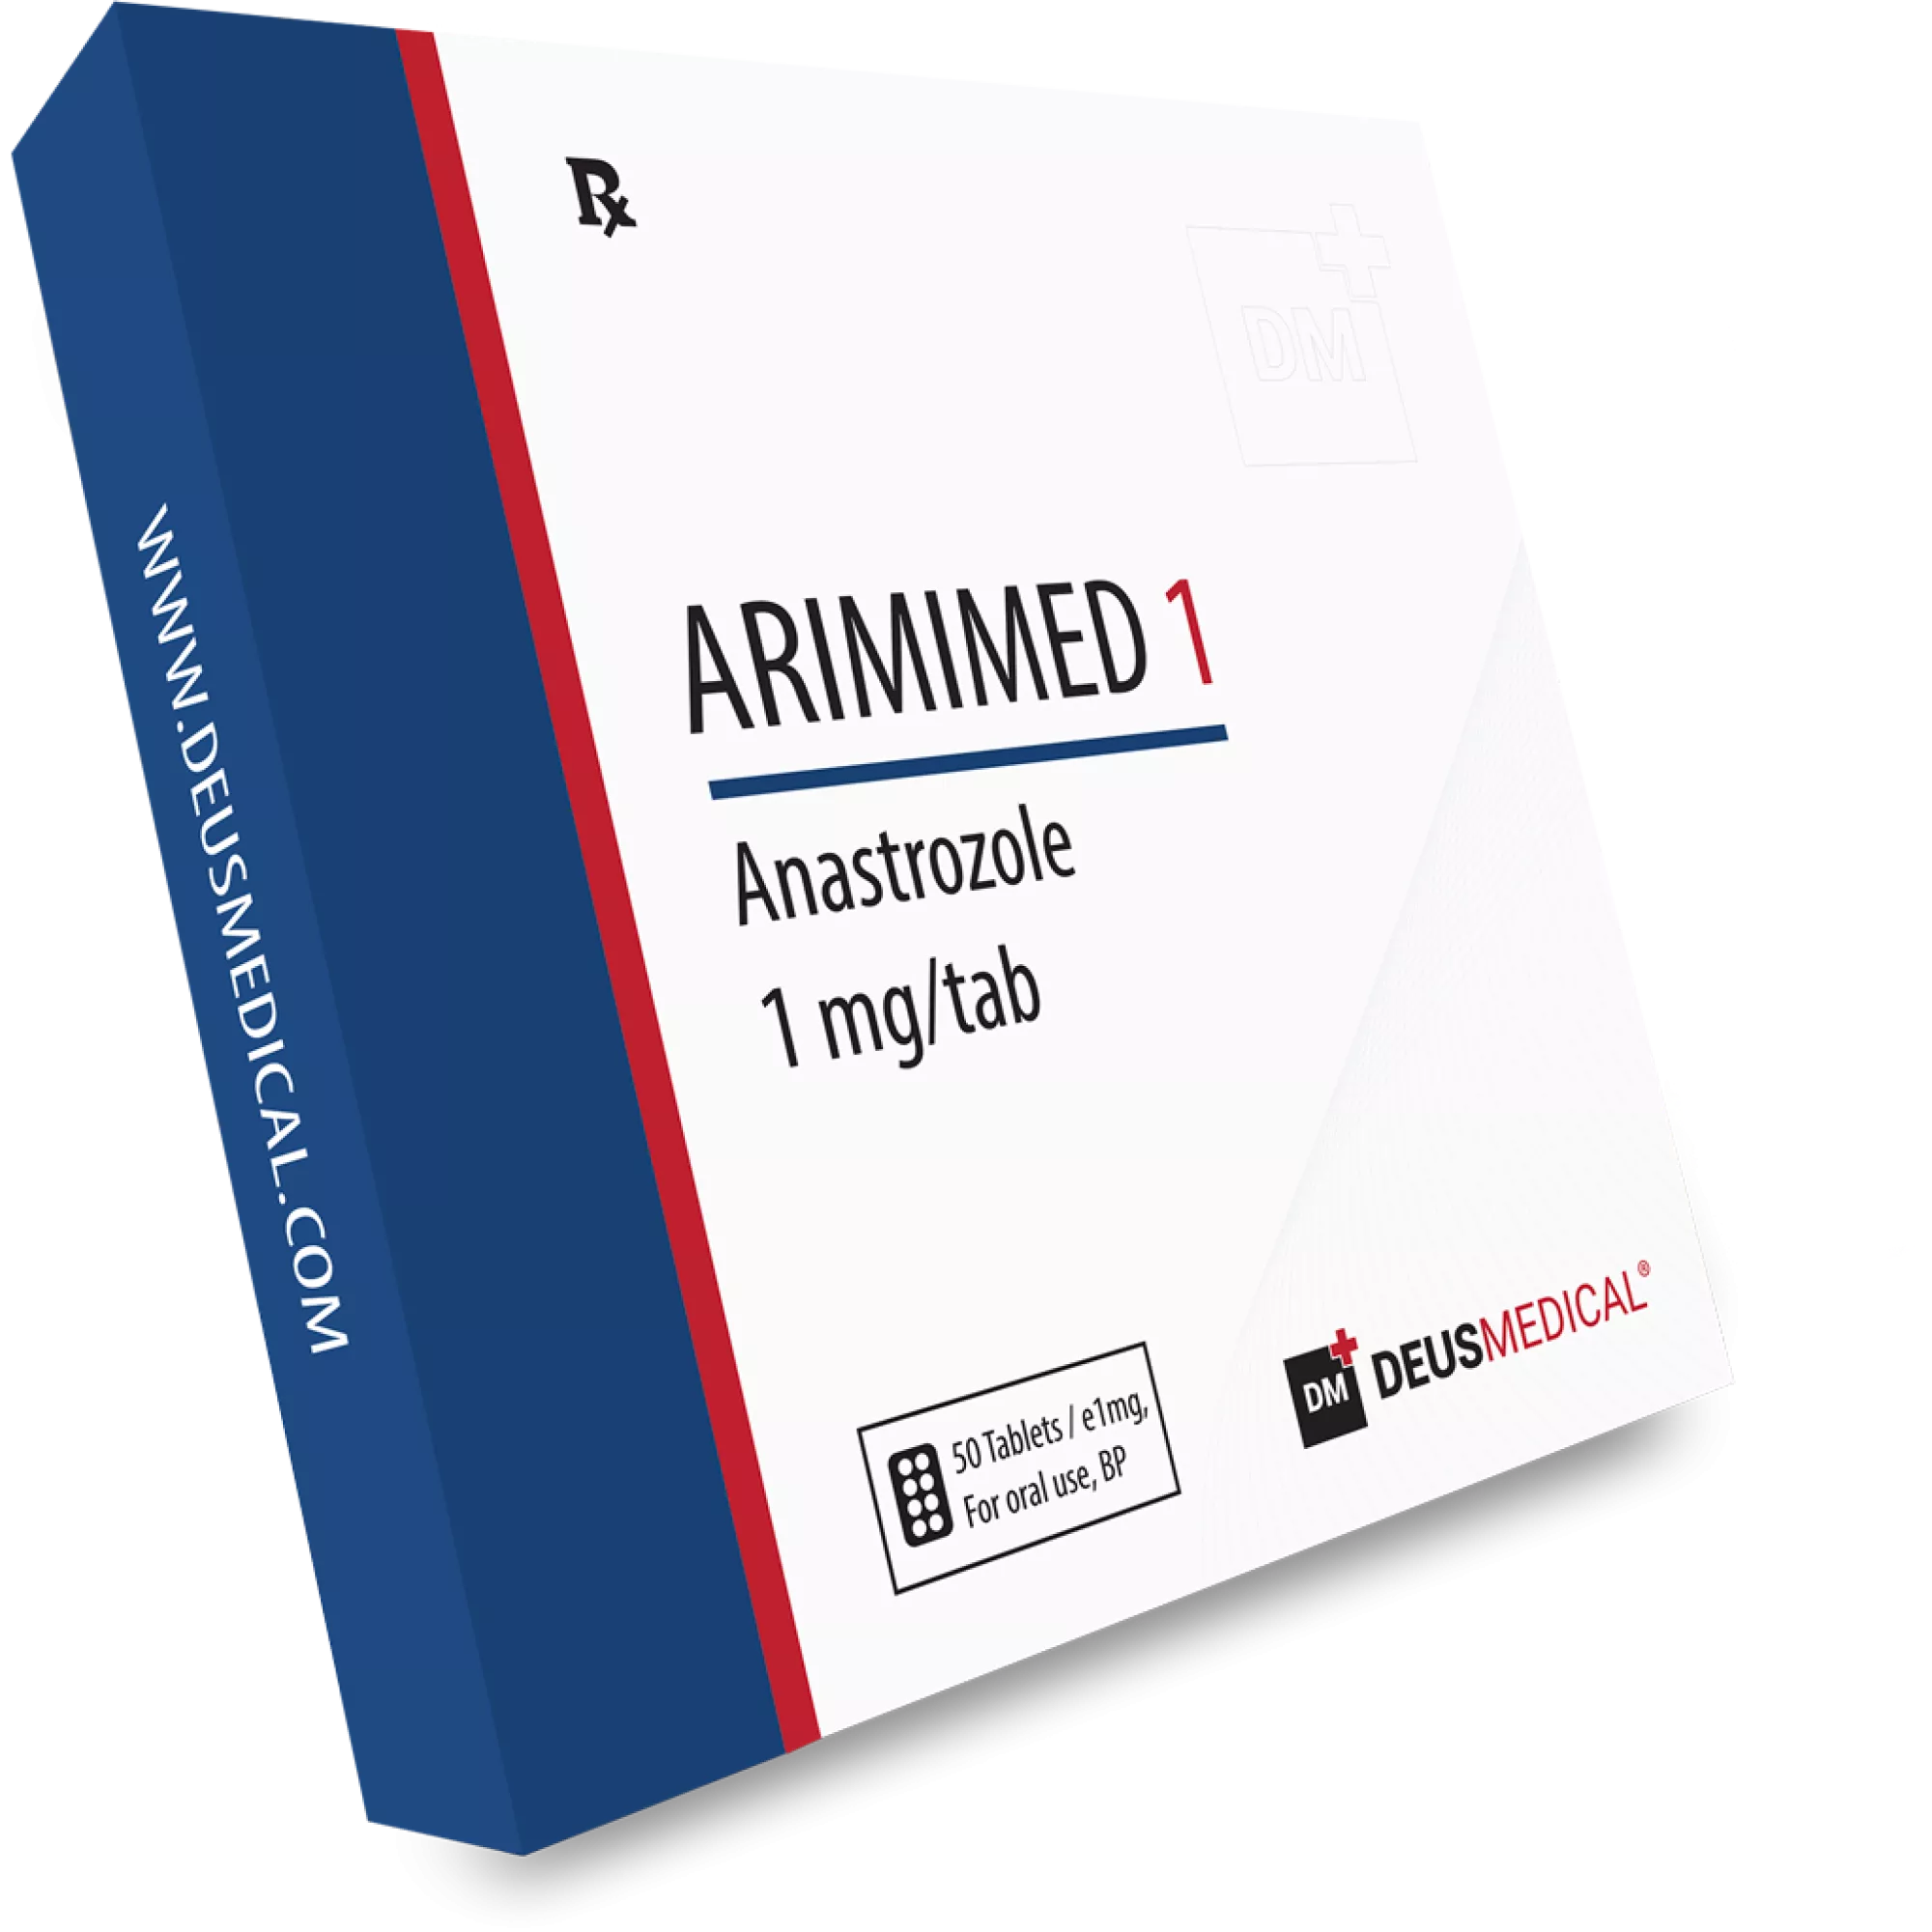 ARIMIMED 1 (Anastrozol), Deus Medical, köp steroider online - www.deuspower.shop